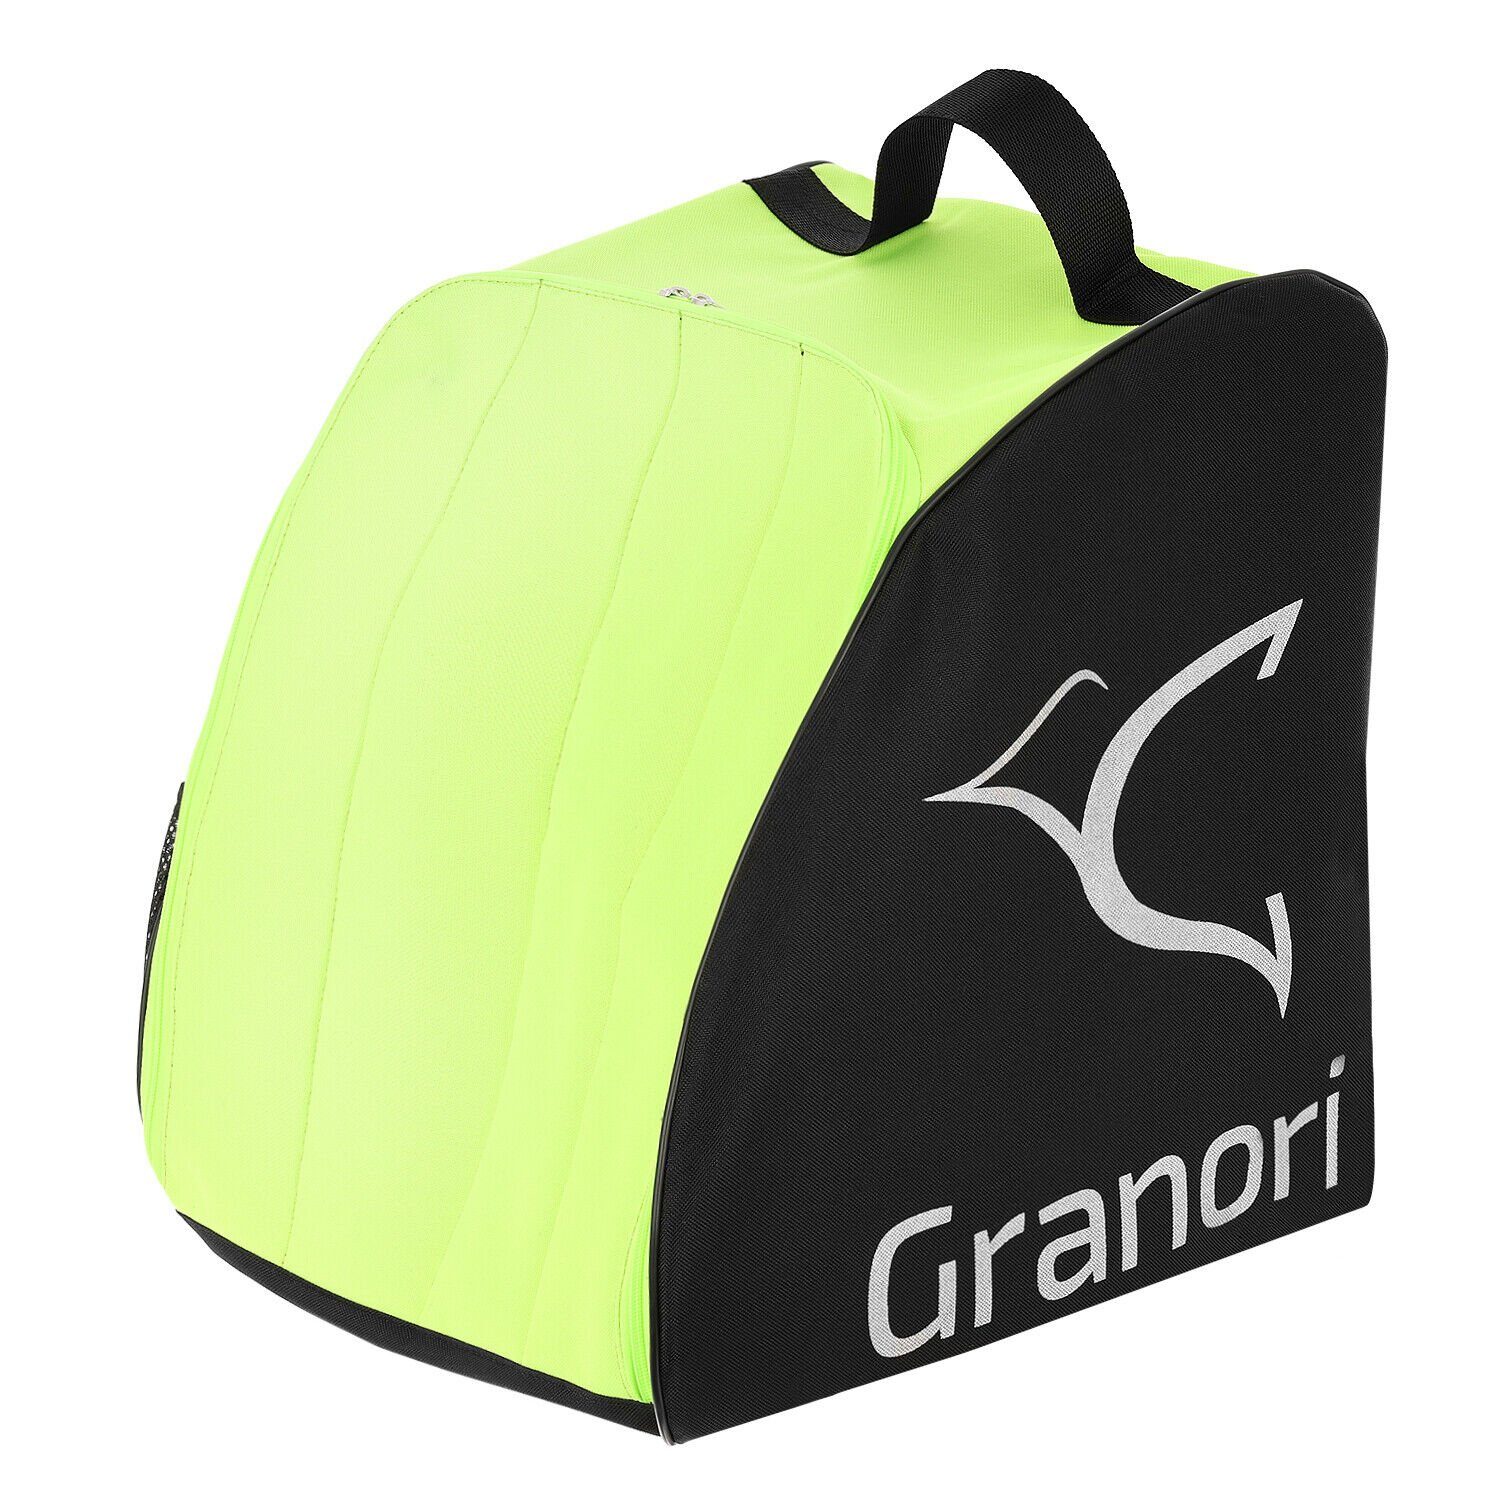 Granori Skirucksack Skischuhtasche für Skistiefel und Helm (gepolstert und abschließbar), mit Entwässerungsöffnung und Außenfach Neongelb-Schwarz